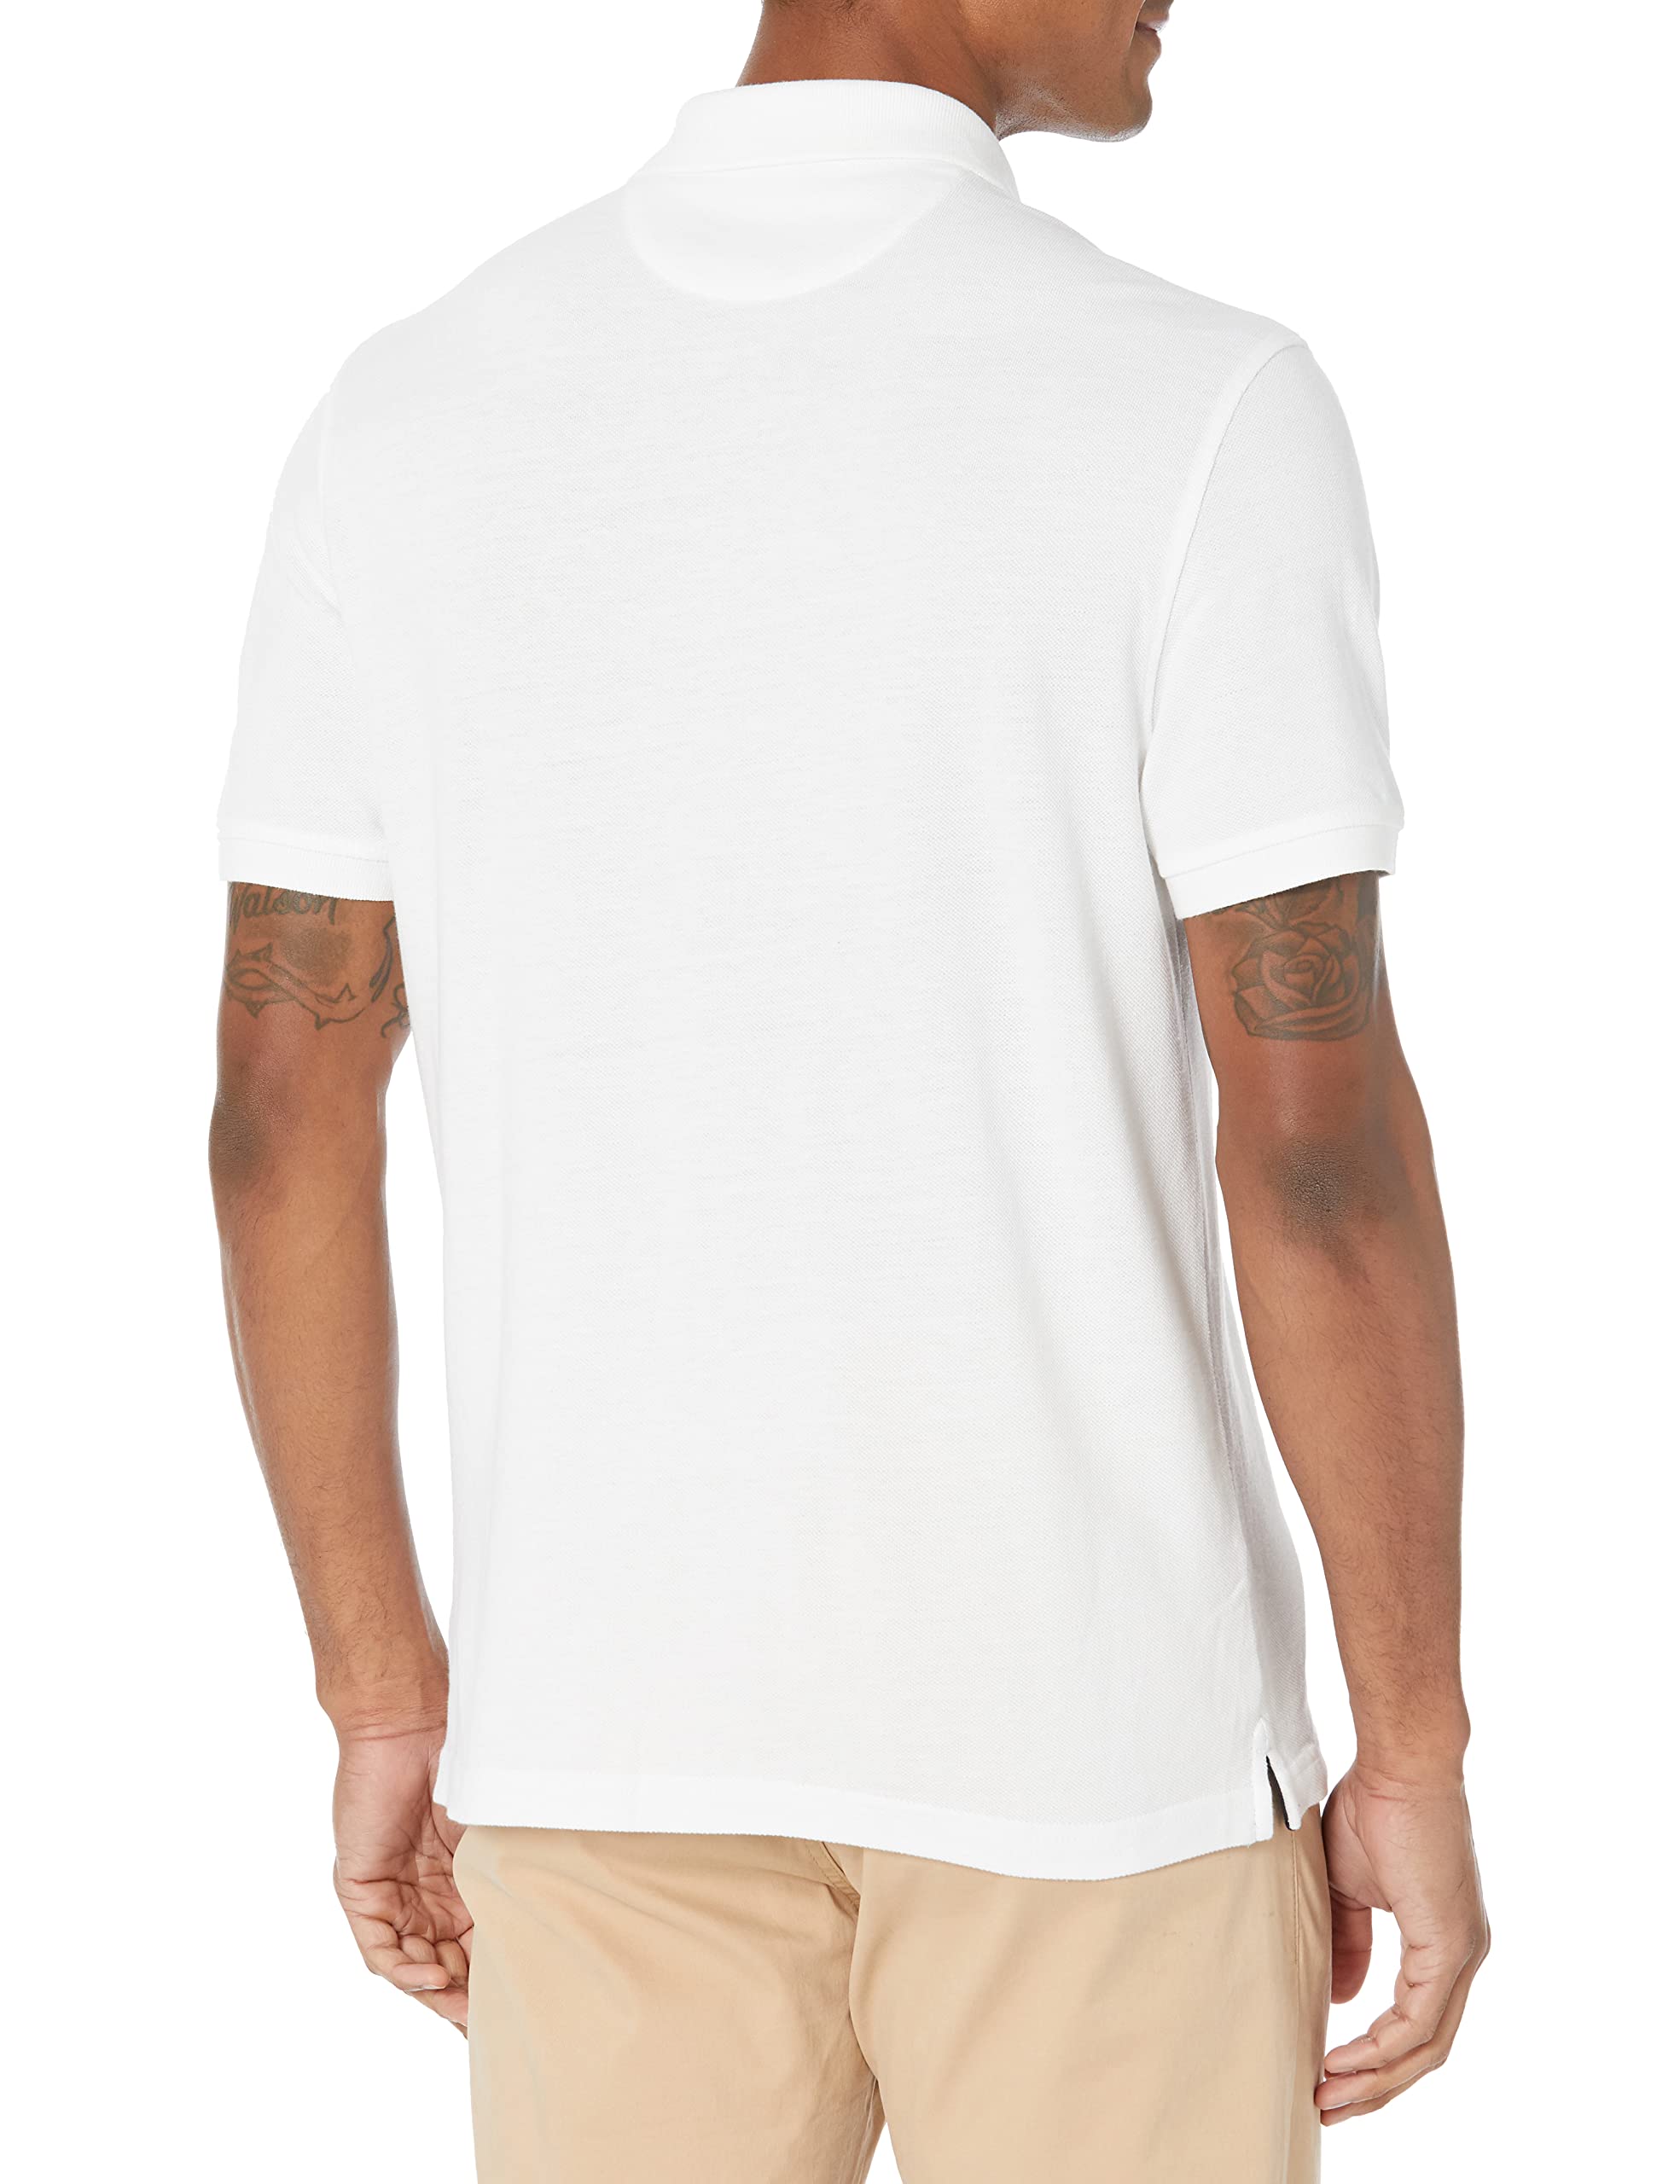 Amazon Essentials Men's Slim-Fit Cotton Pique Polo Shirt